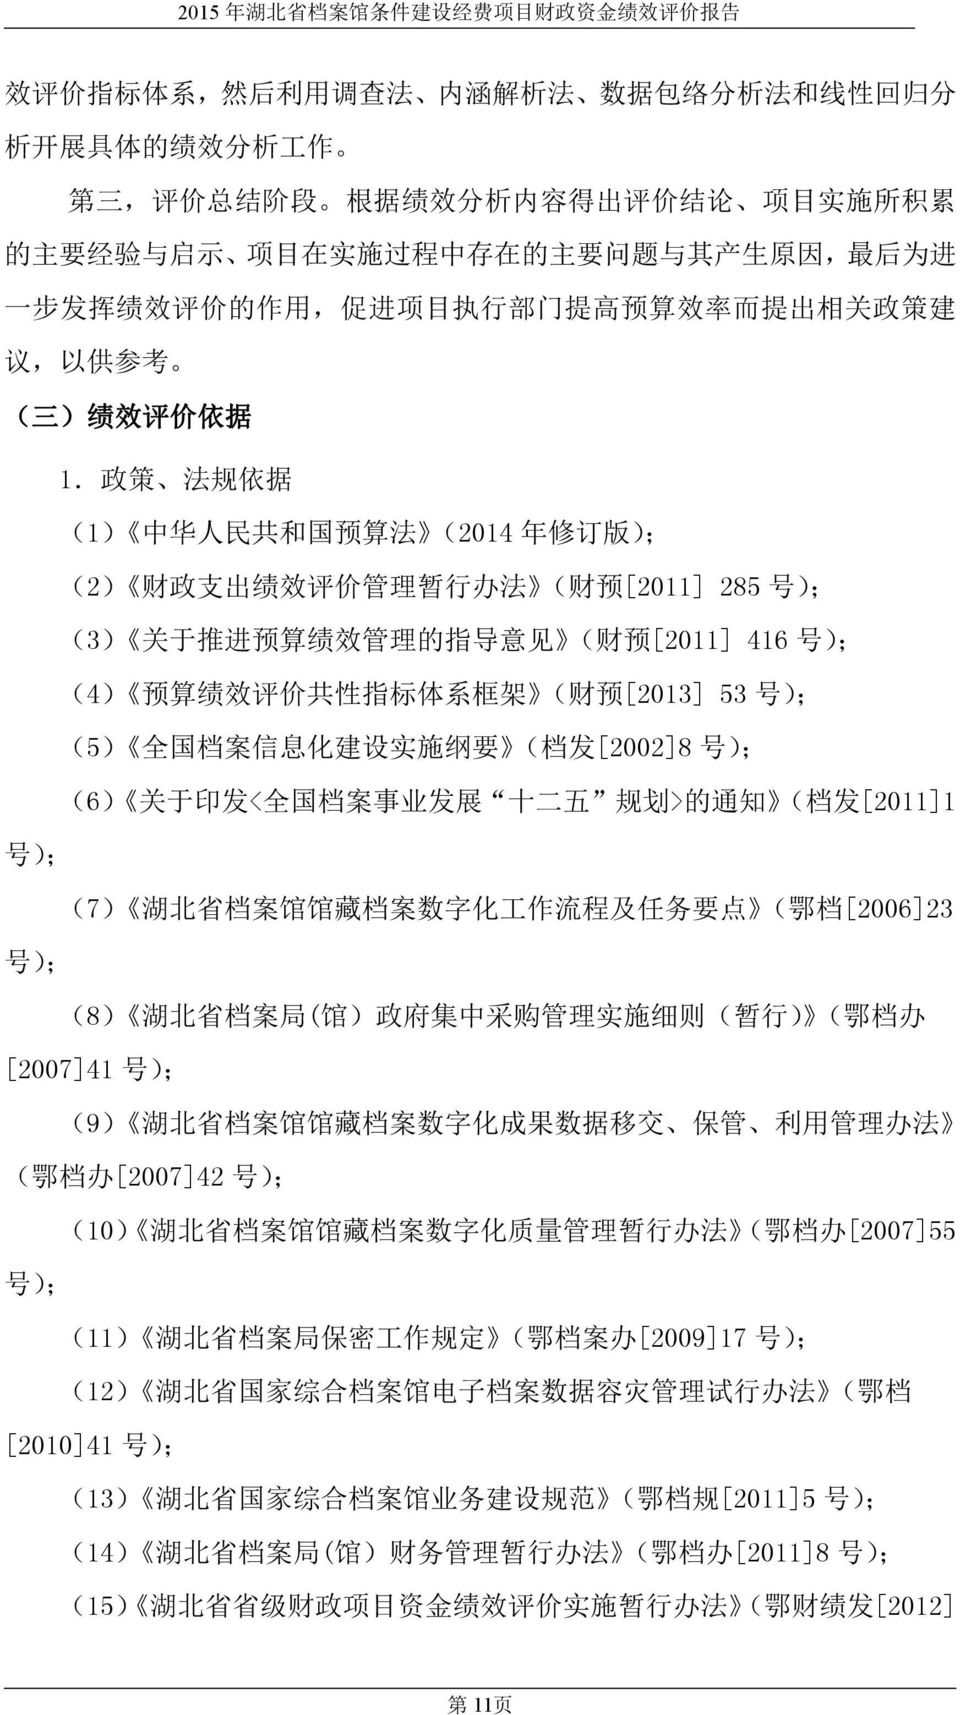 政 策 法 规 依 据 (1) 中 华 人 民 共 和 国 预 算 法 (2014 年 修 订 版 ); (2) 财 政 支 出 绩 效 评 价 管 理 暂 行 办 法 ( 财 预 [2011] 285 号 ); (3) 关 于 推 进 预 算 绩 效 管 理 的 指 导 意 见 ( 财 预 [2011] 416 号 ); (4) 预 算 绩 效 评 价 共 性 指 标 体 系 框 架 ( 财